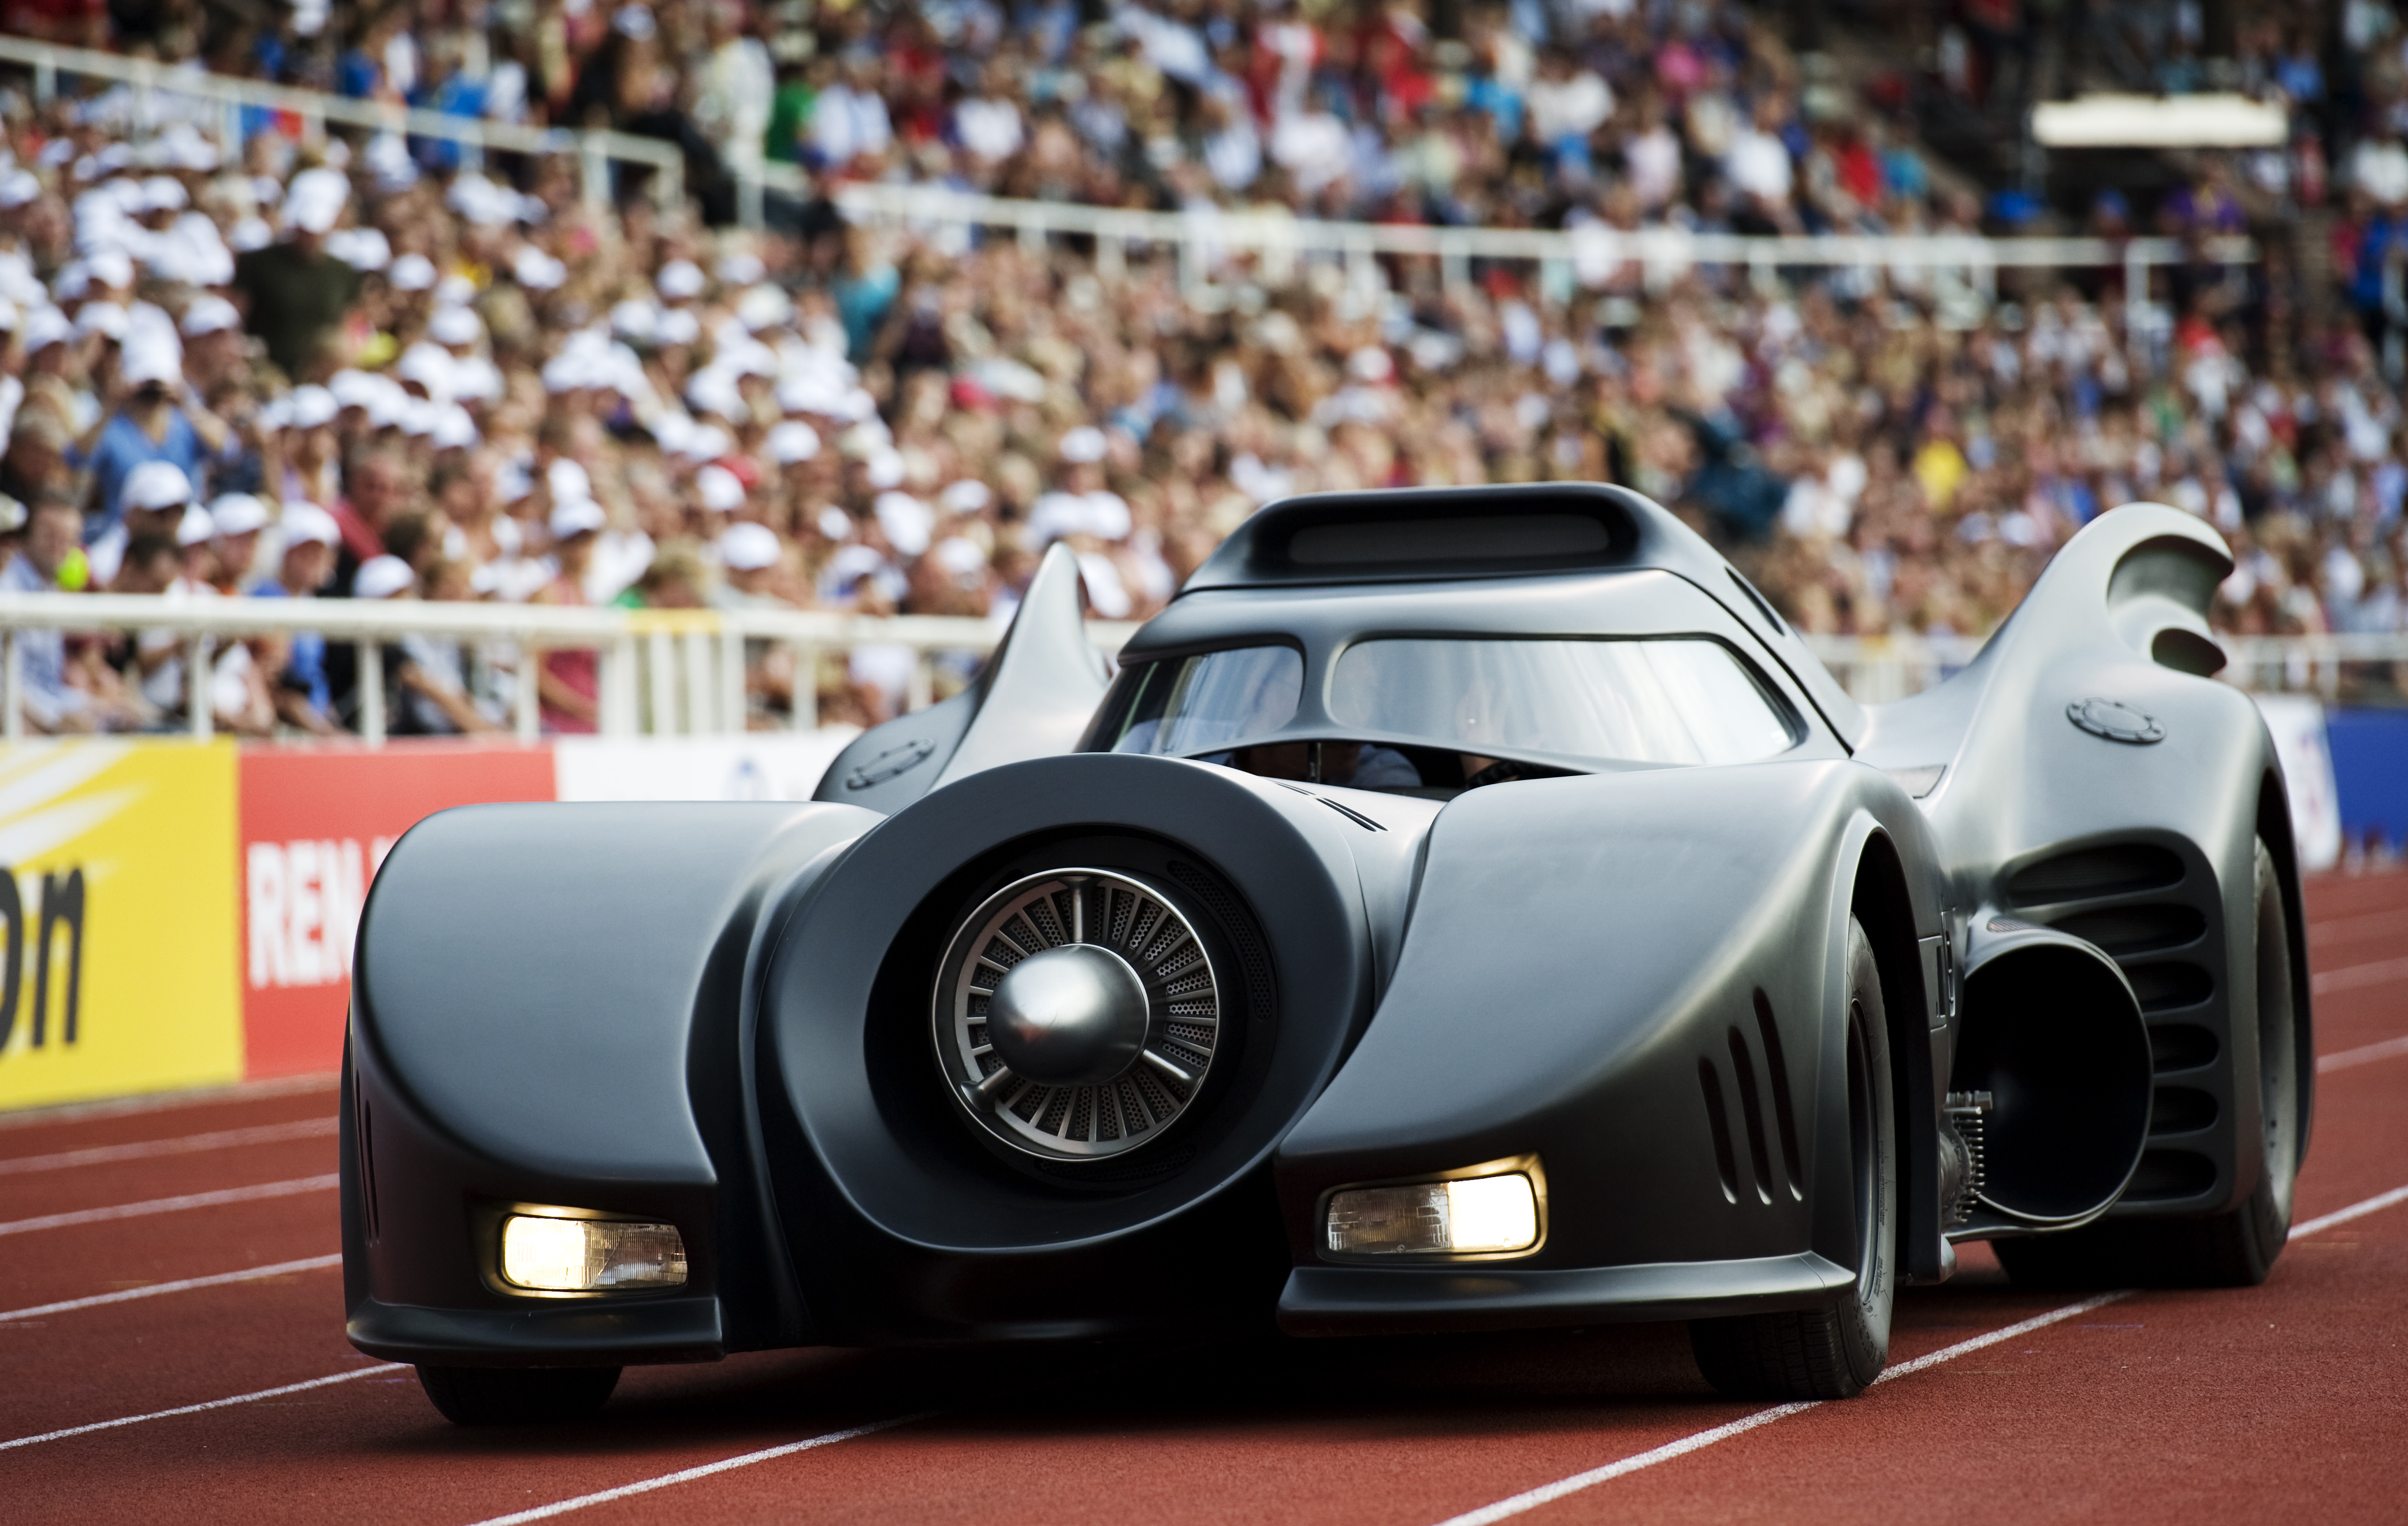 A Batmobile replica enters a stadium